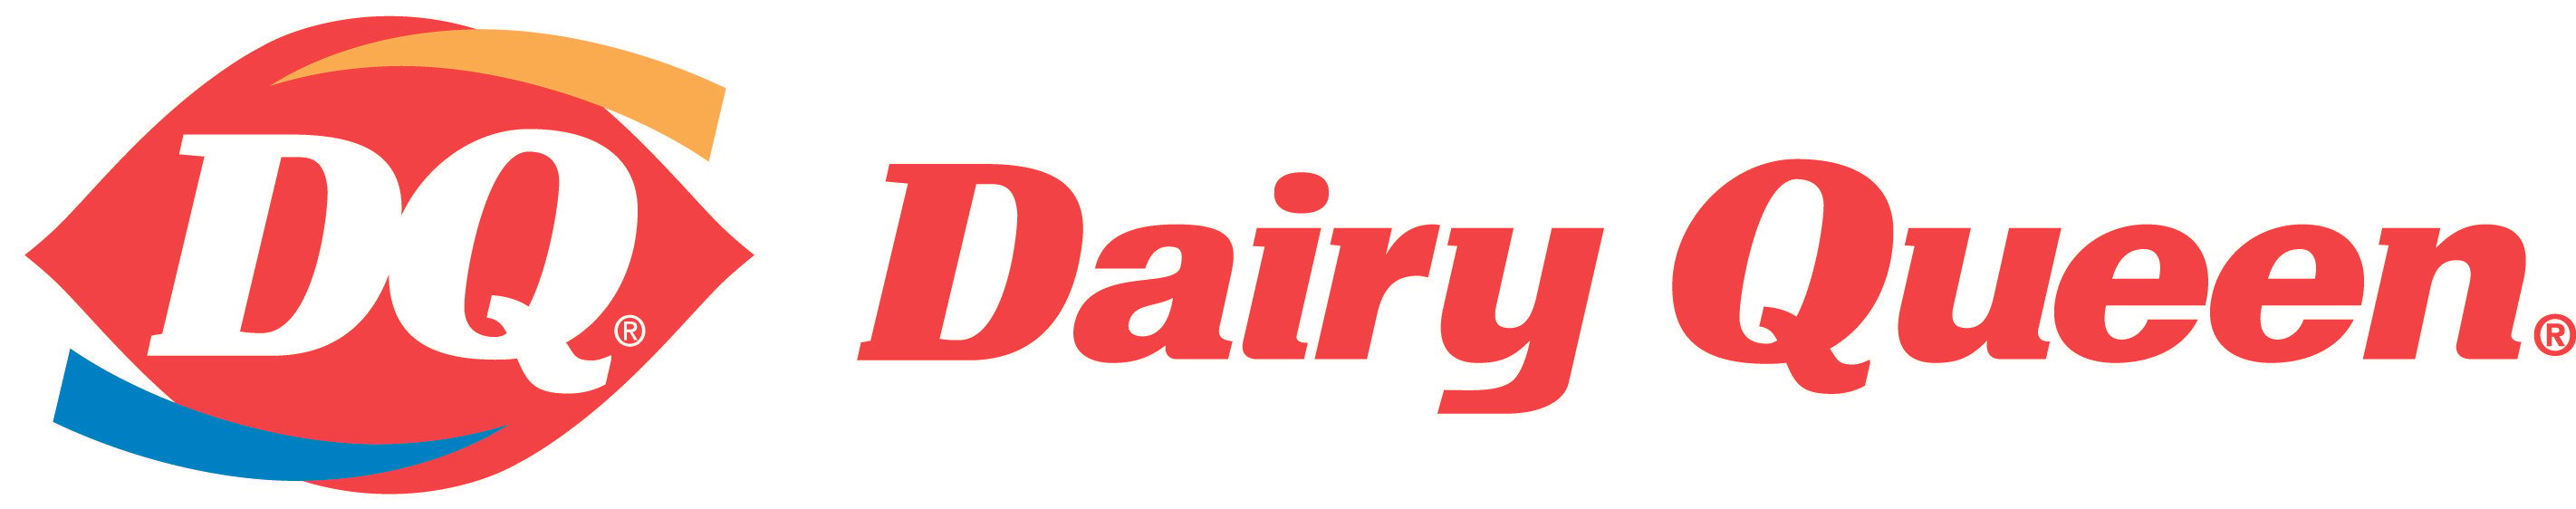 Dairy Queen Logo - Dairy queen Logos